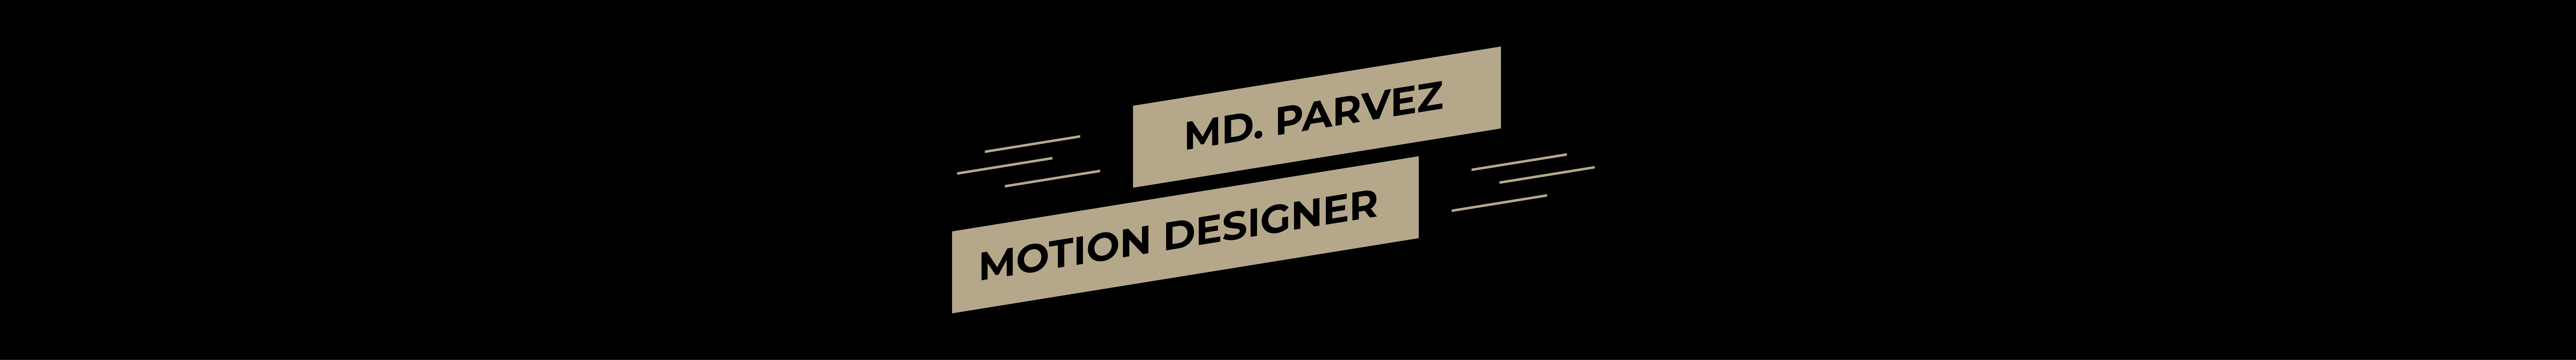 Baner profilu użytkownika Md Parvez